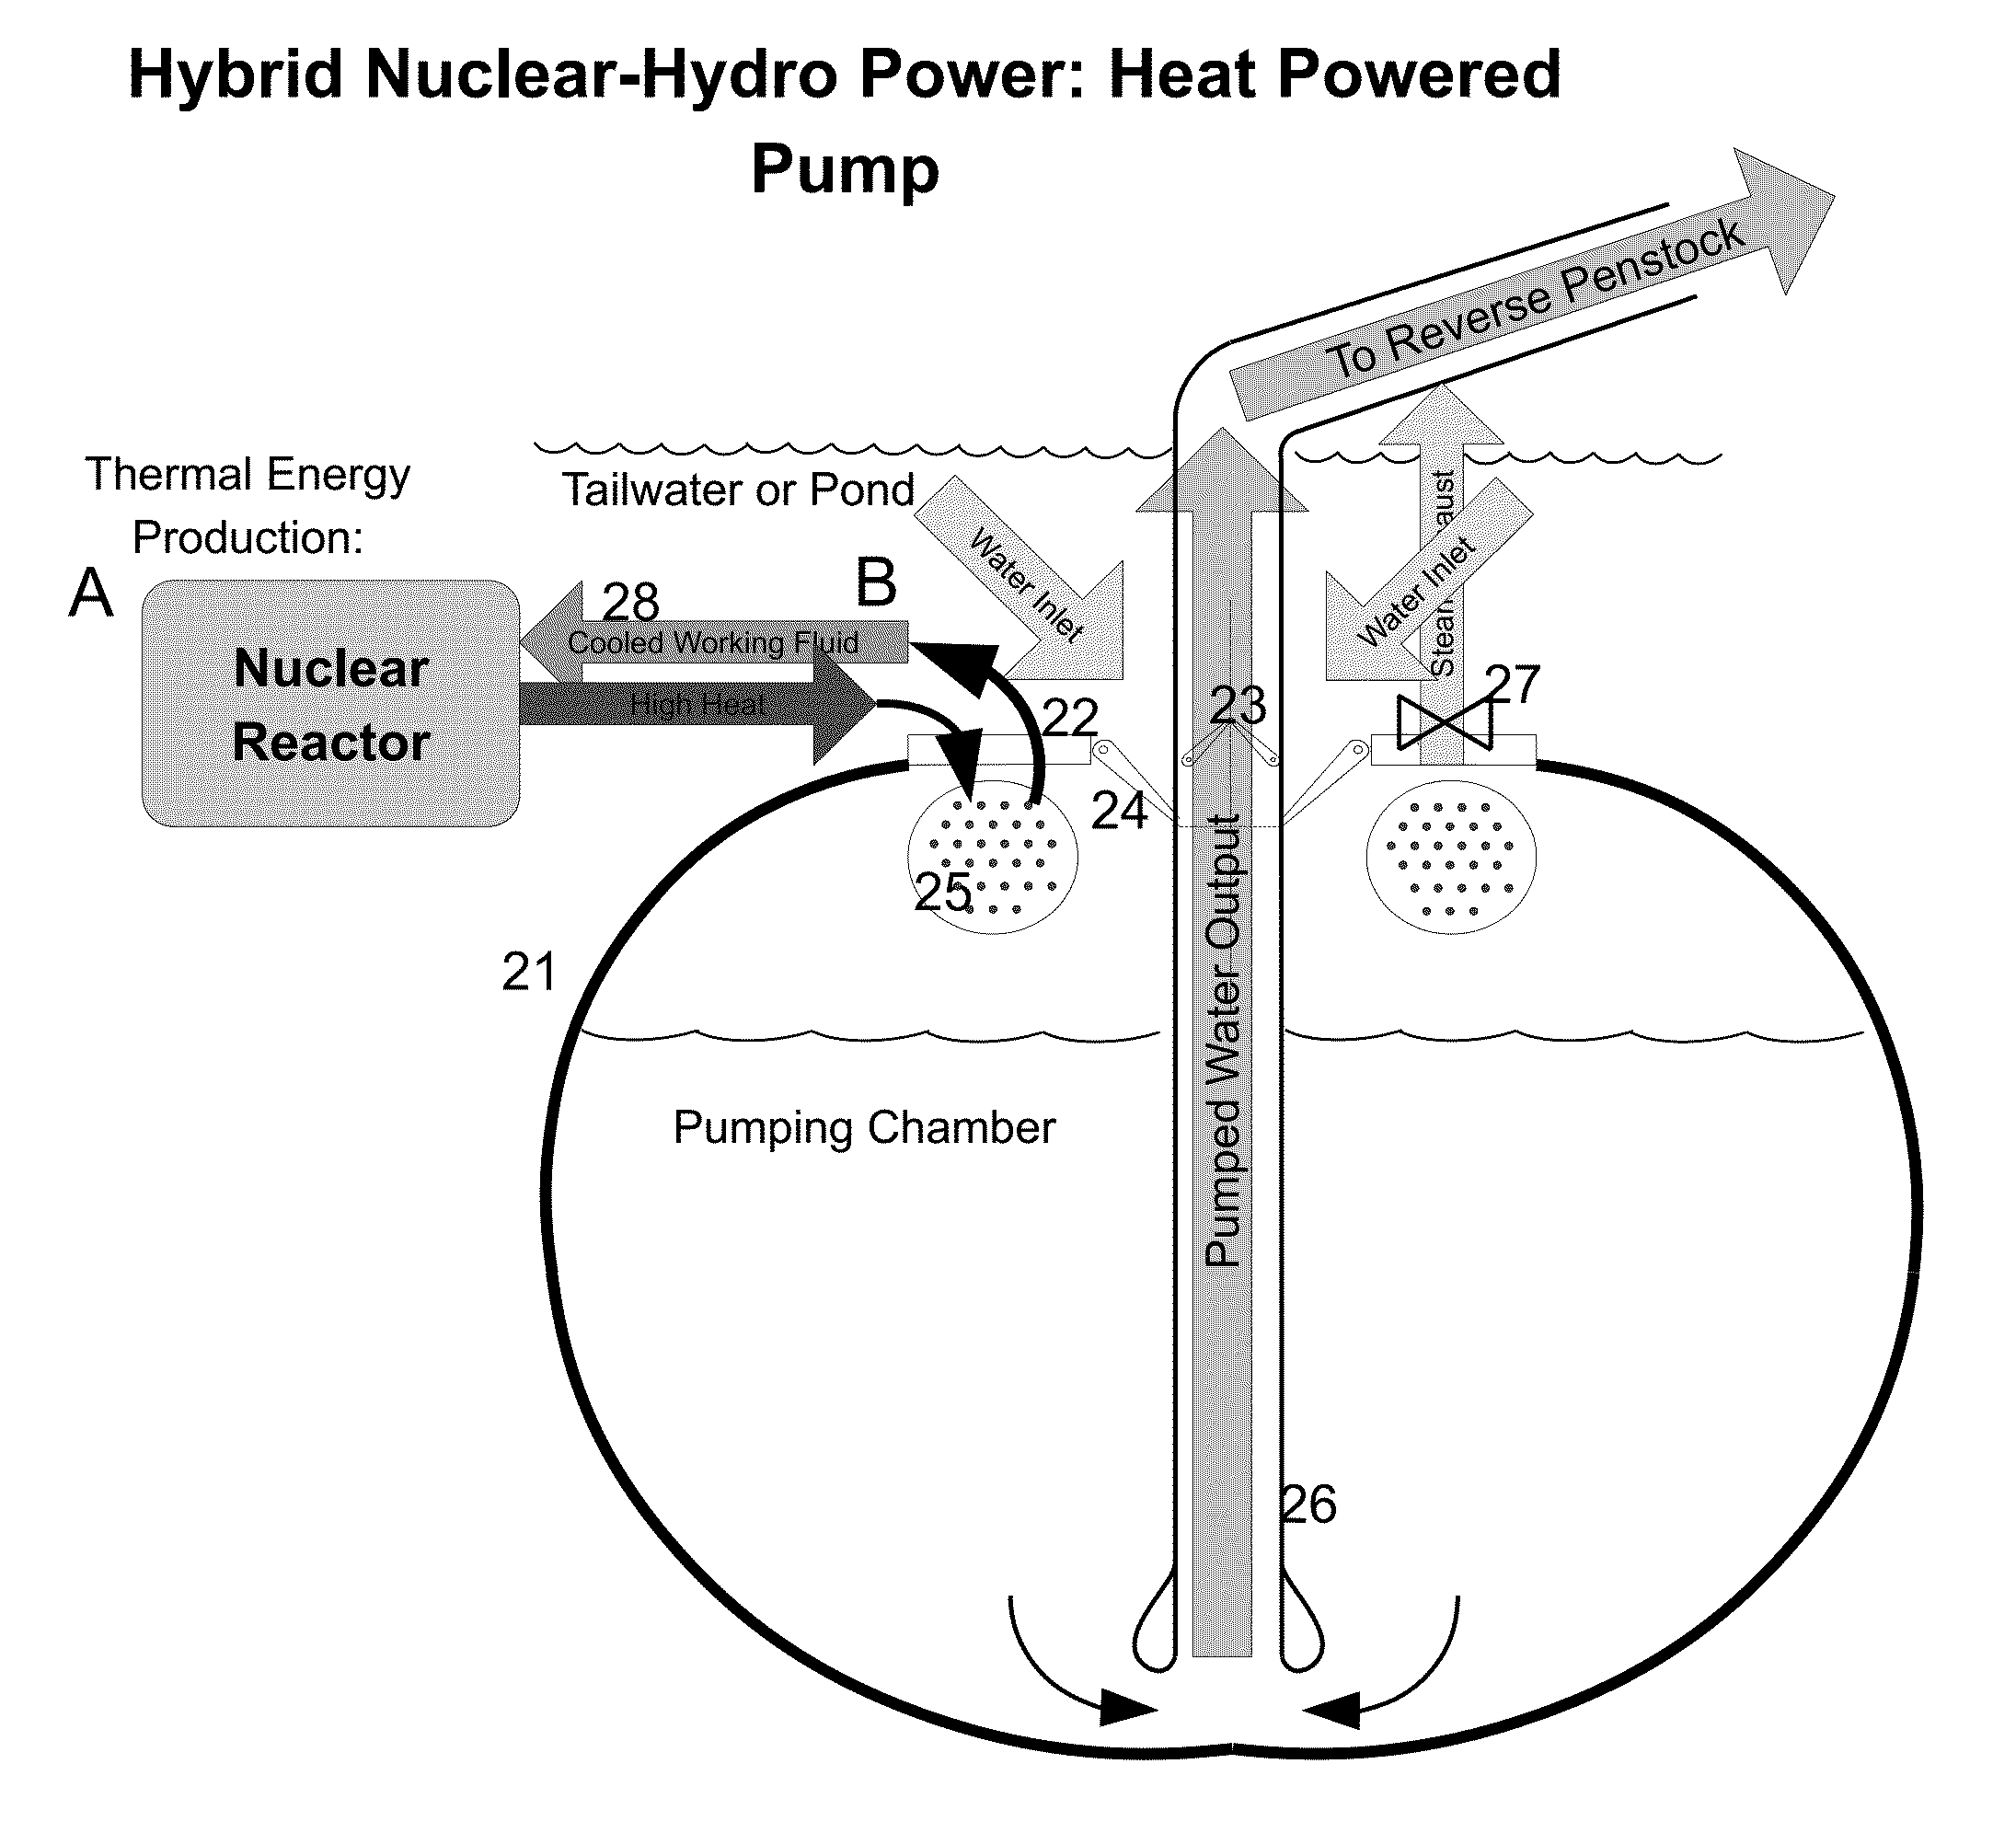 Hybrid nuclear-hydro power plant